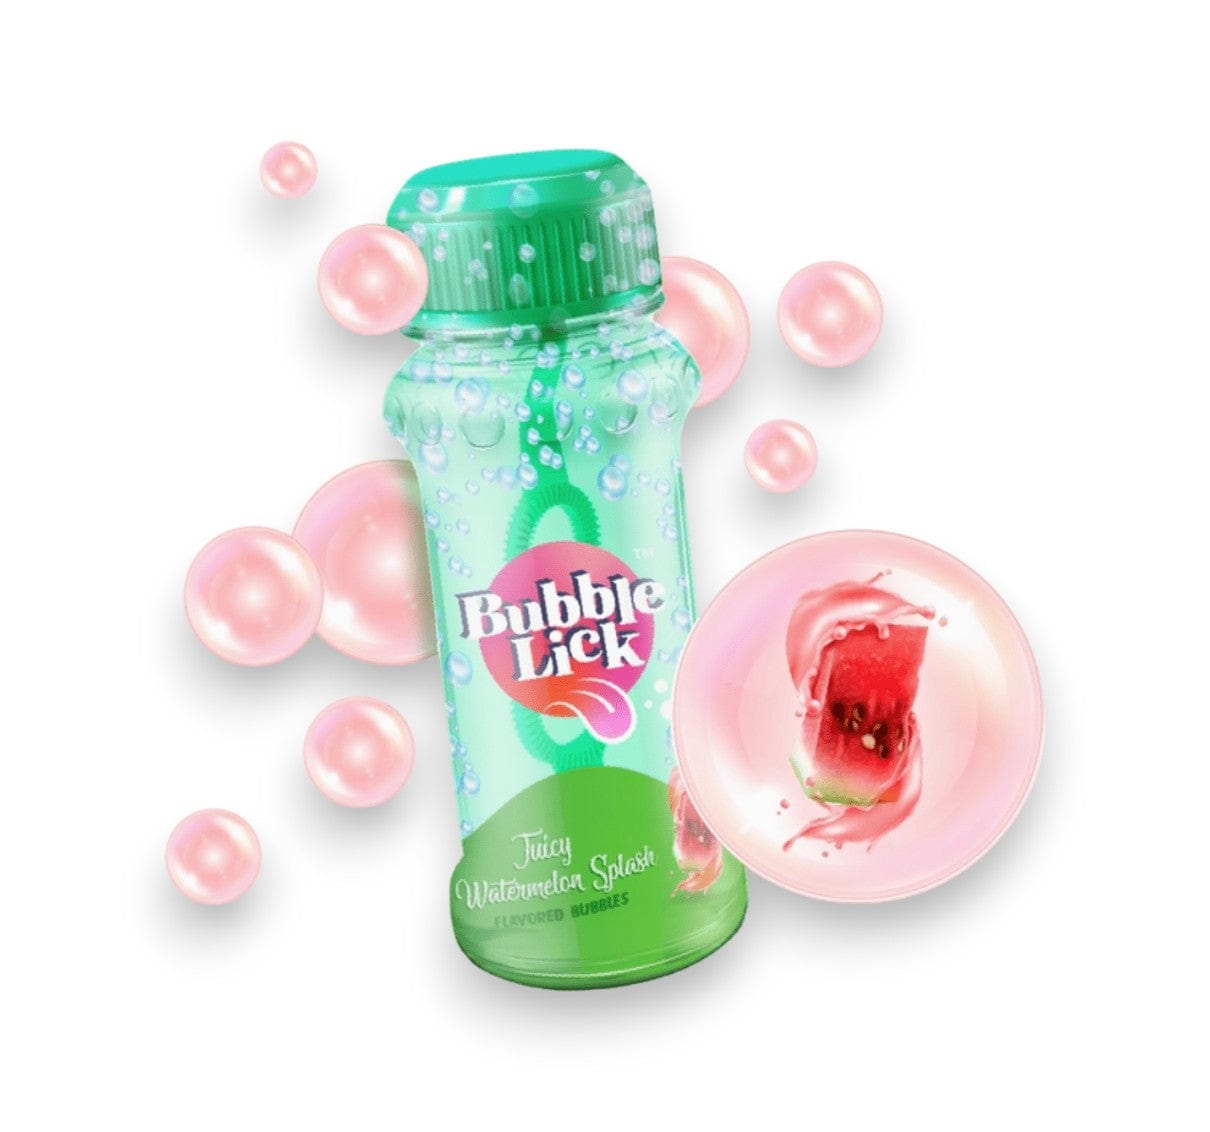 Toysmith Bubbles Bubblelick Watermelon Bubbles buy online boutique kids clothing